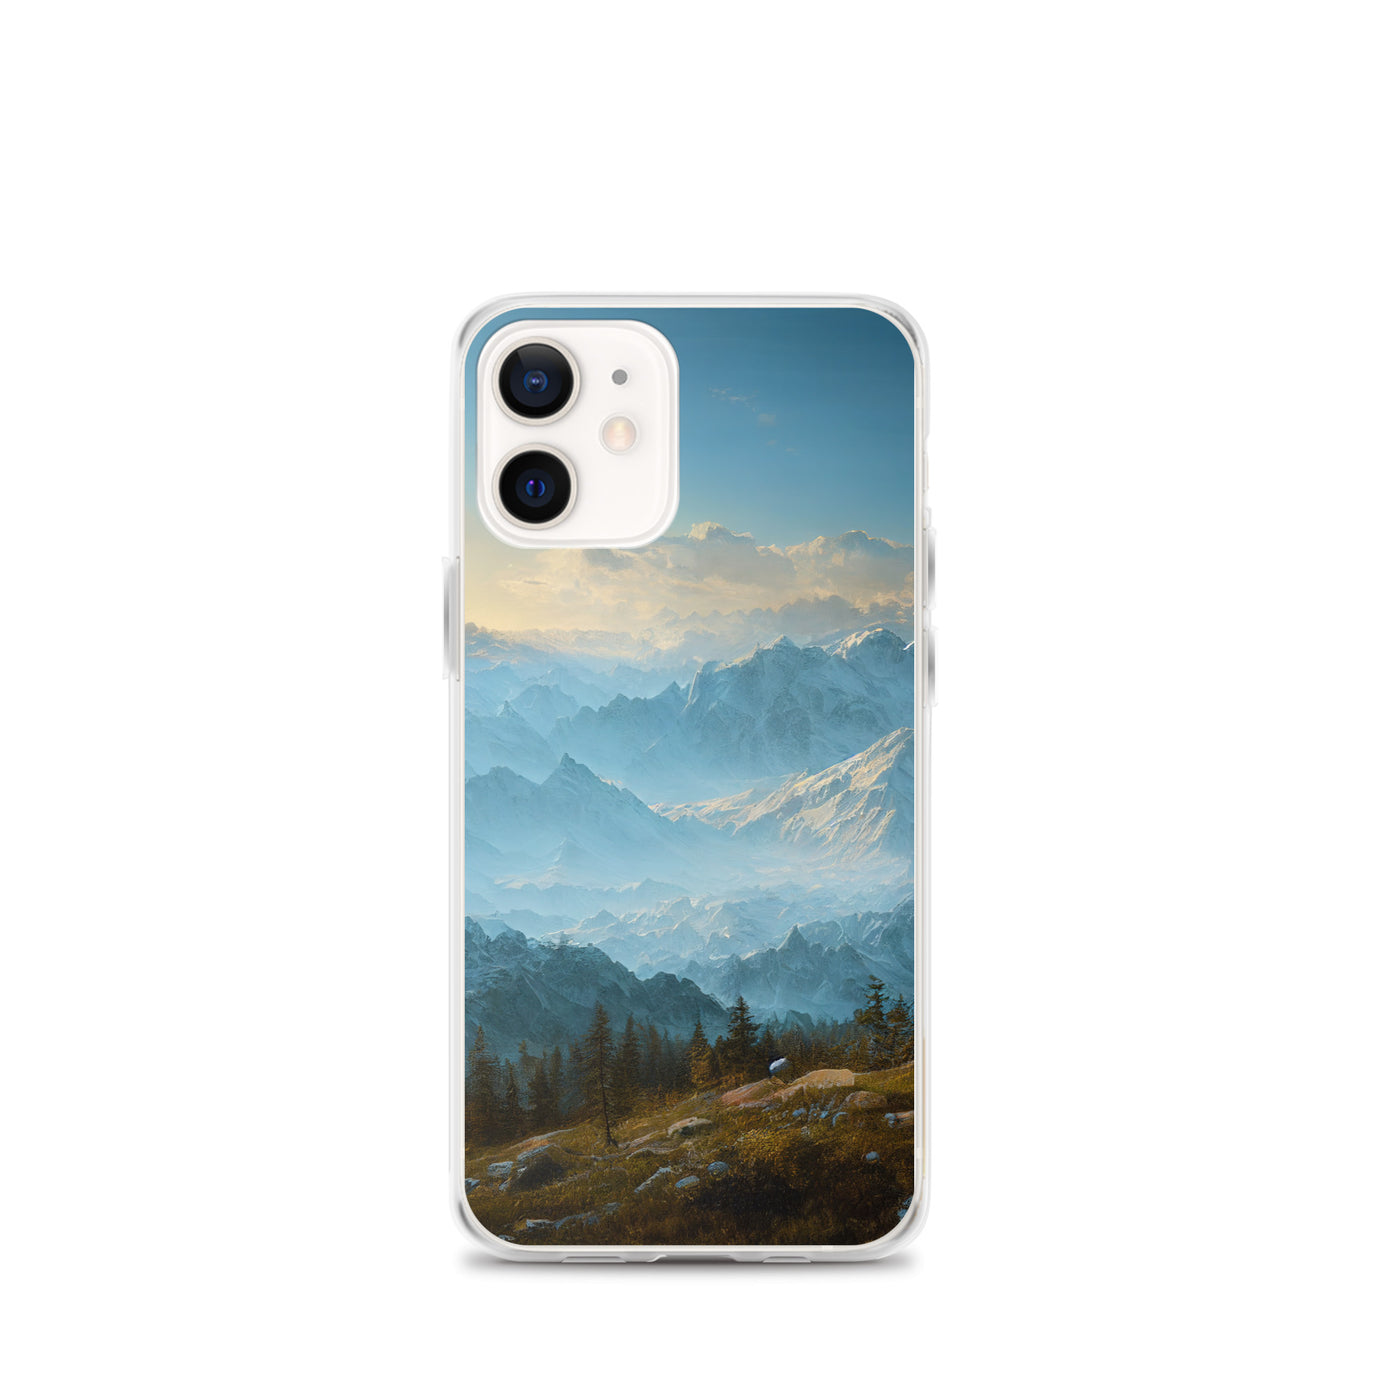 Schöne Berge mit Nebel bedeckt - Ölmalerei - iPhone Schutzhülle (durchsichtig) berge xxx iPhone 12 mini